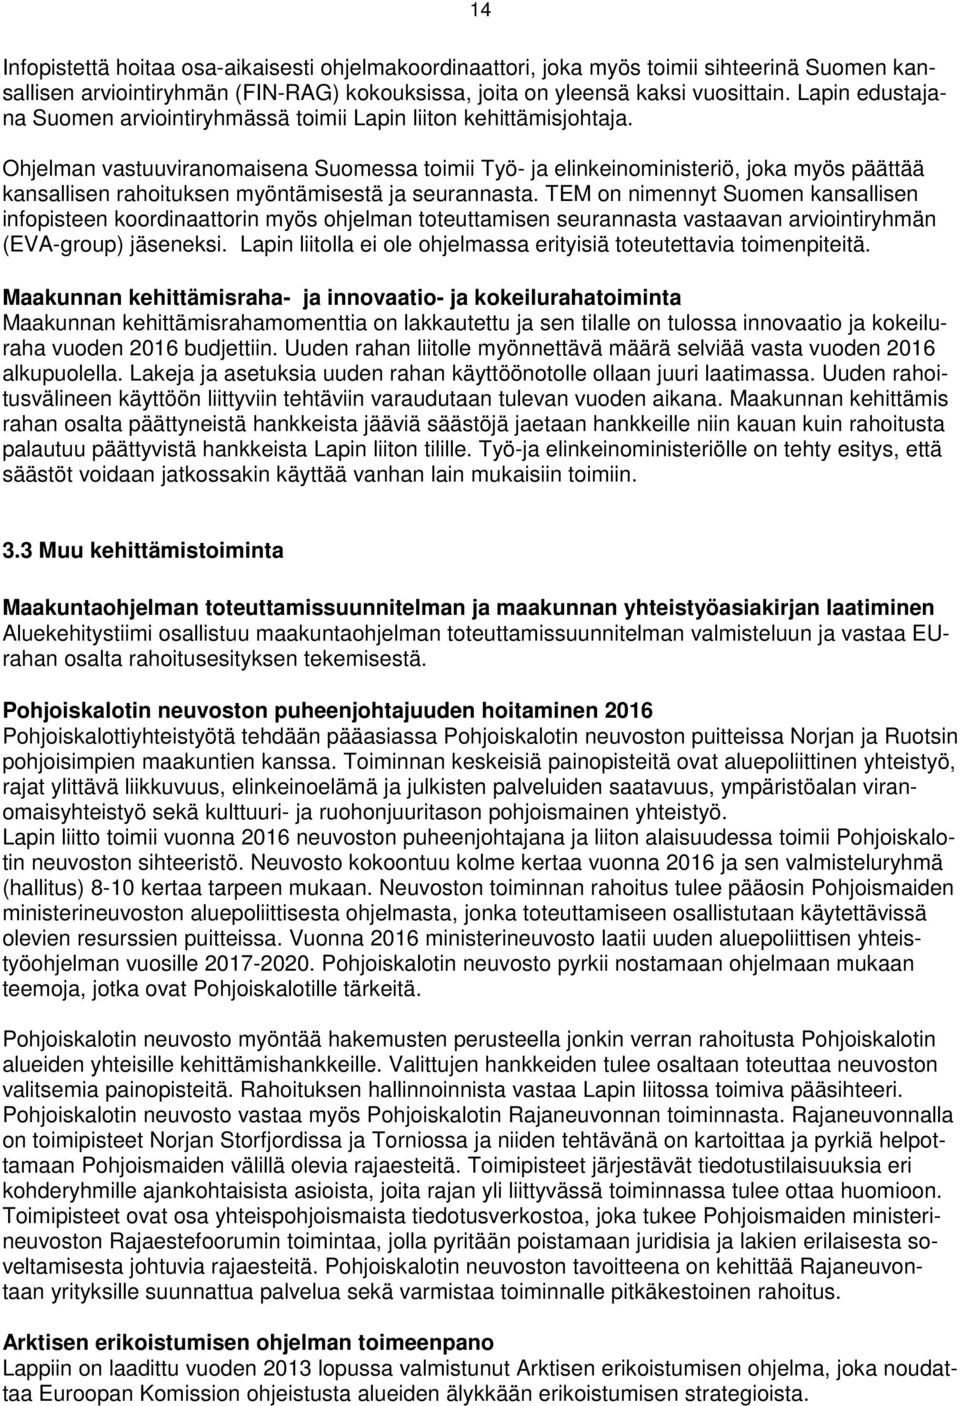 Ohjelman vastuuviranomaisena Suomessa toimii Työ- ja elinkeinoministeriö, joka myös päättää kansallisen rahoituksen myöntämisestä ja seurannasta.